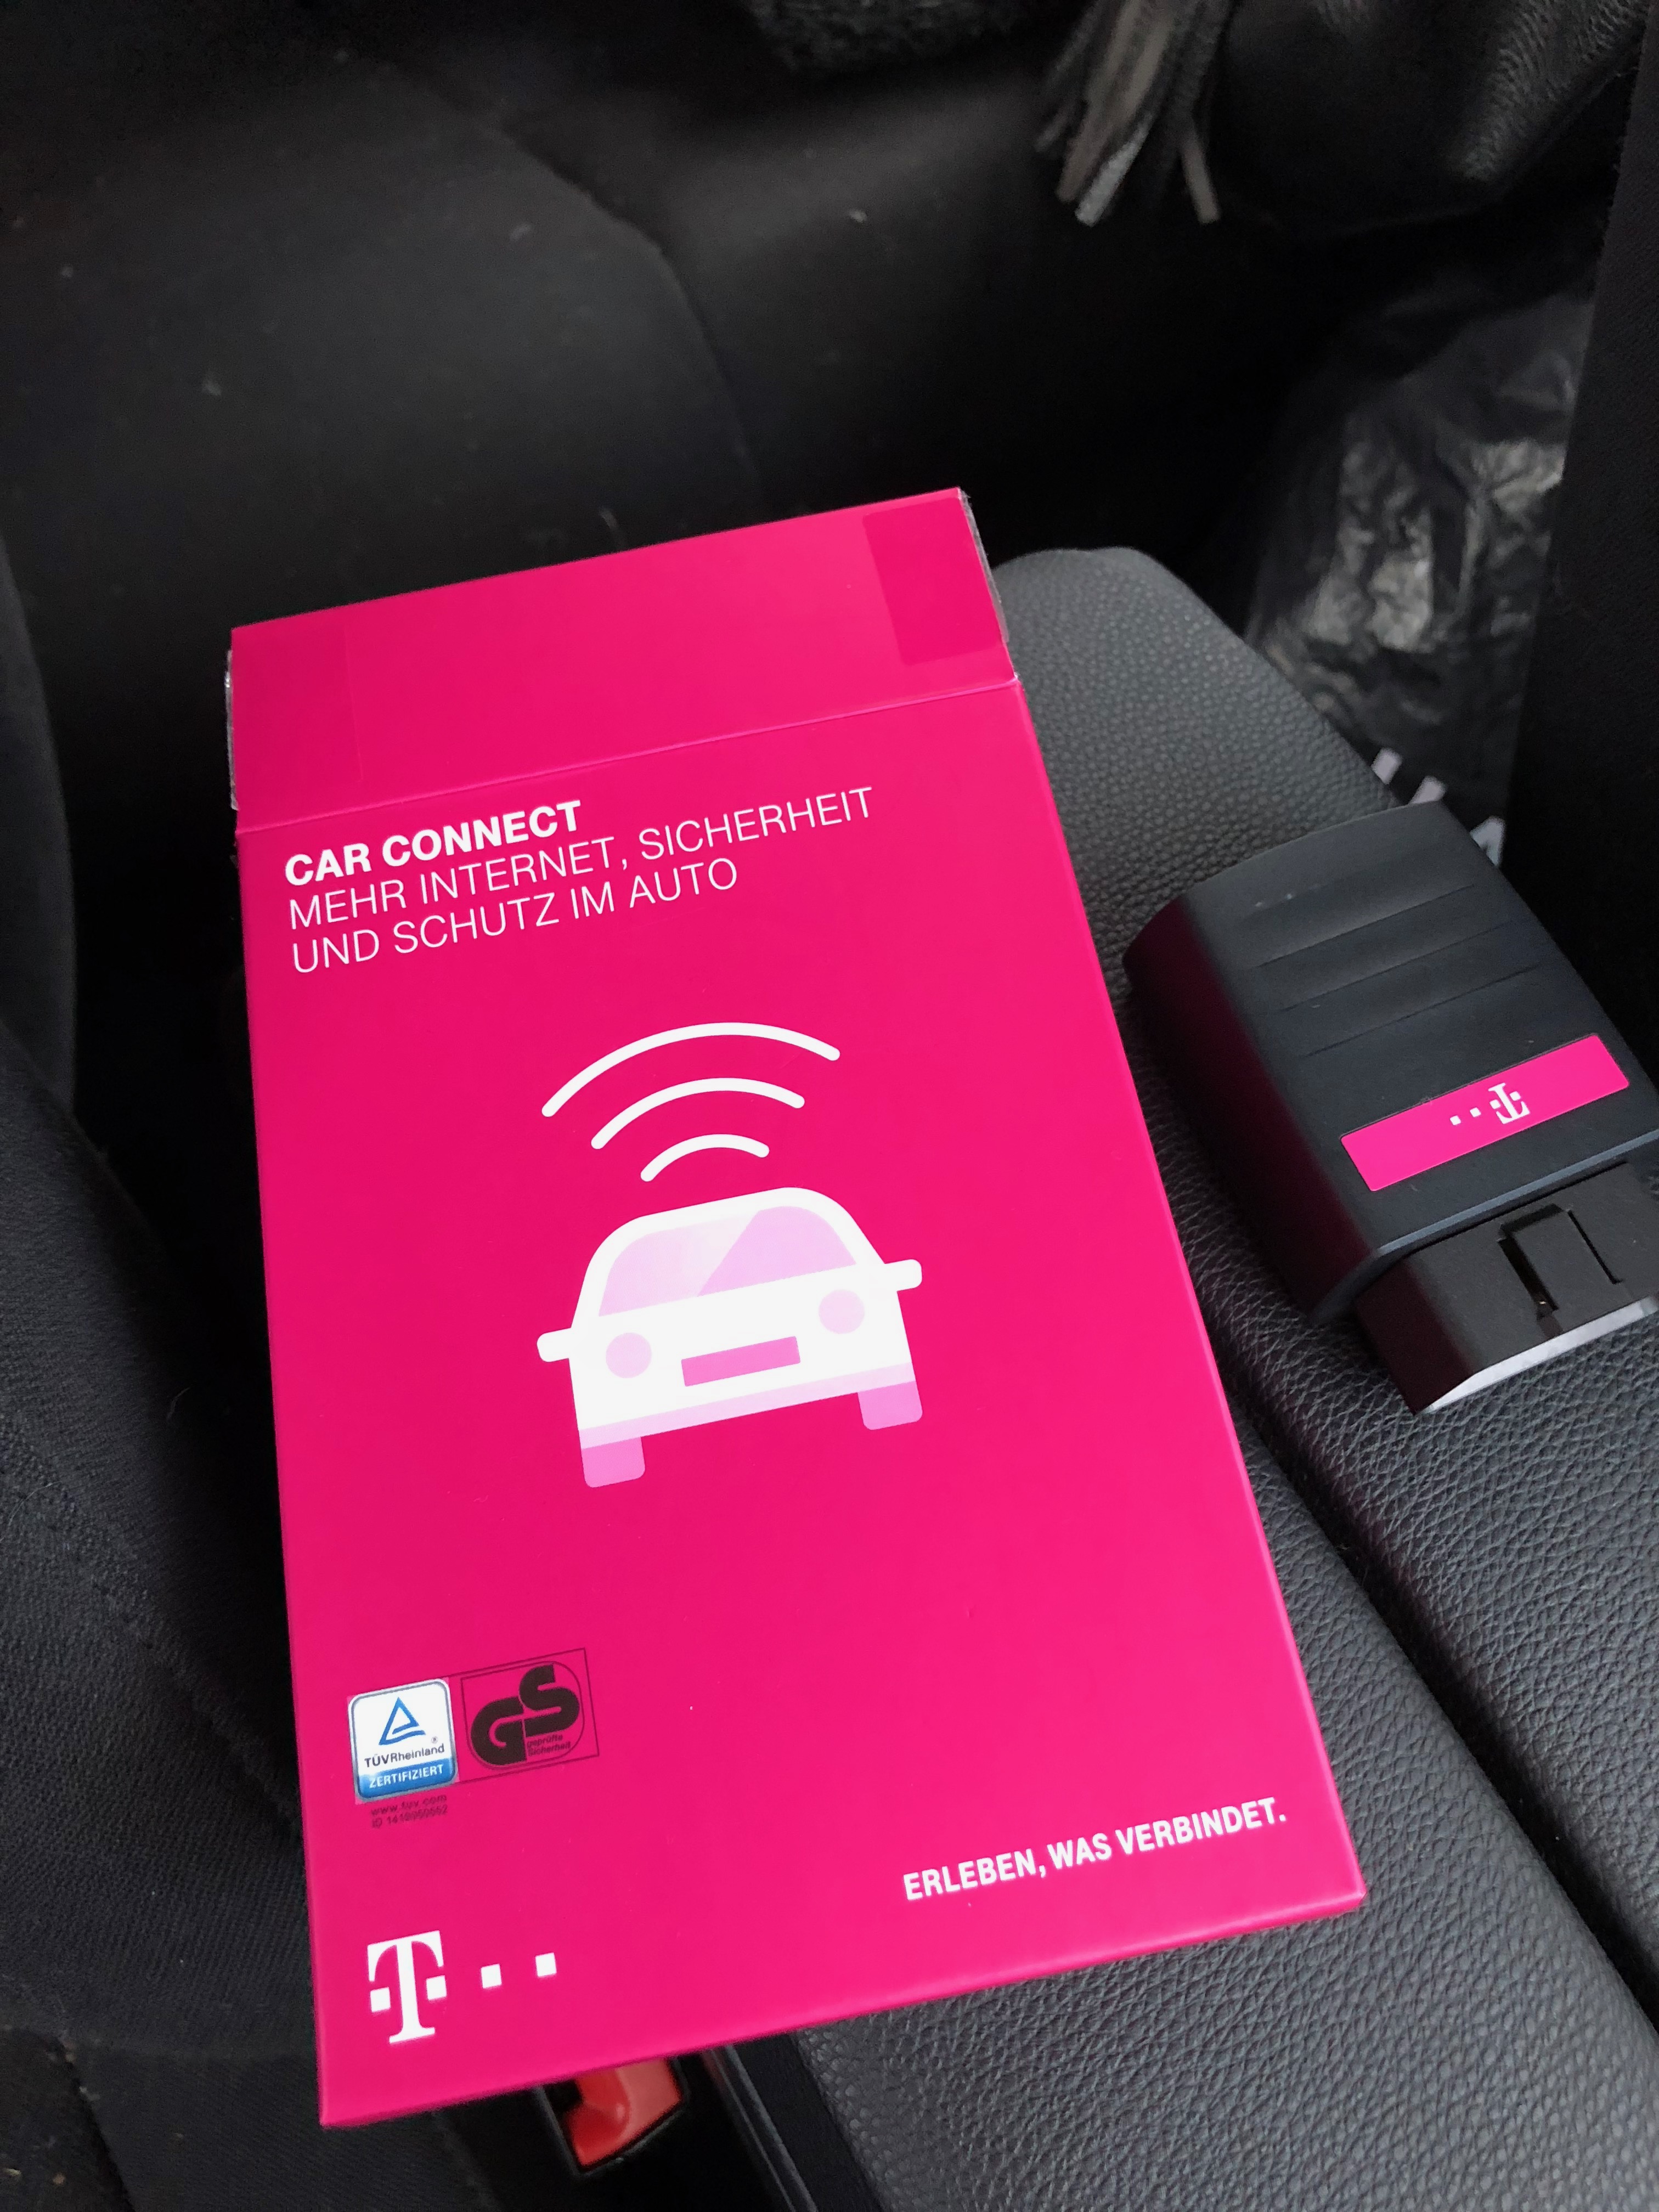 telekom-carconnect-erfahrung-device-internet-unterwegs-auto-sicherheit-adapter